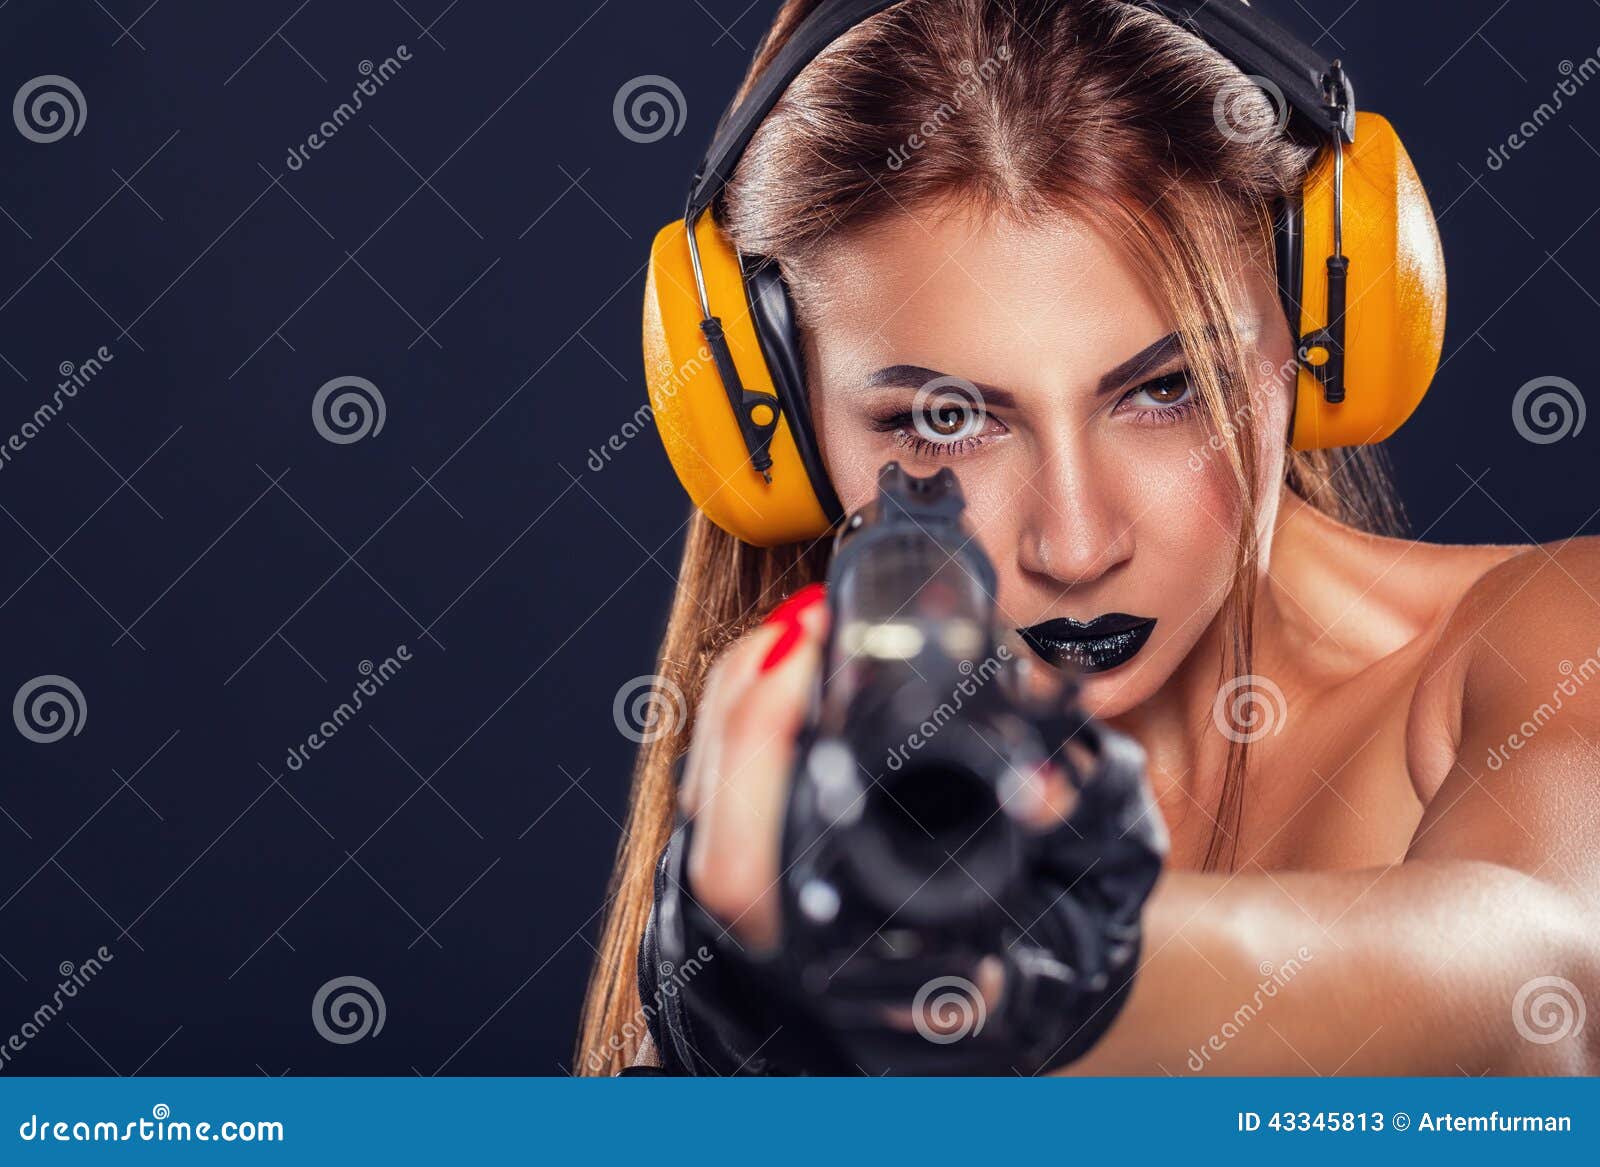 Francotirador. Chica joven hermosa con el entrenamiento negro del maquillaje con una pistola en un fondo oscuro